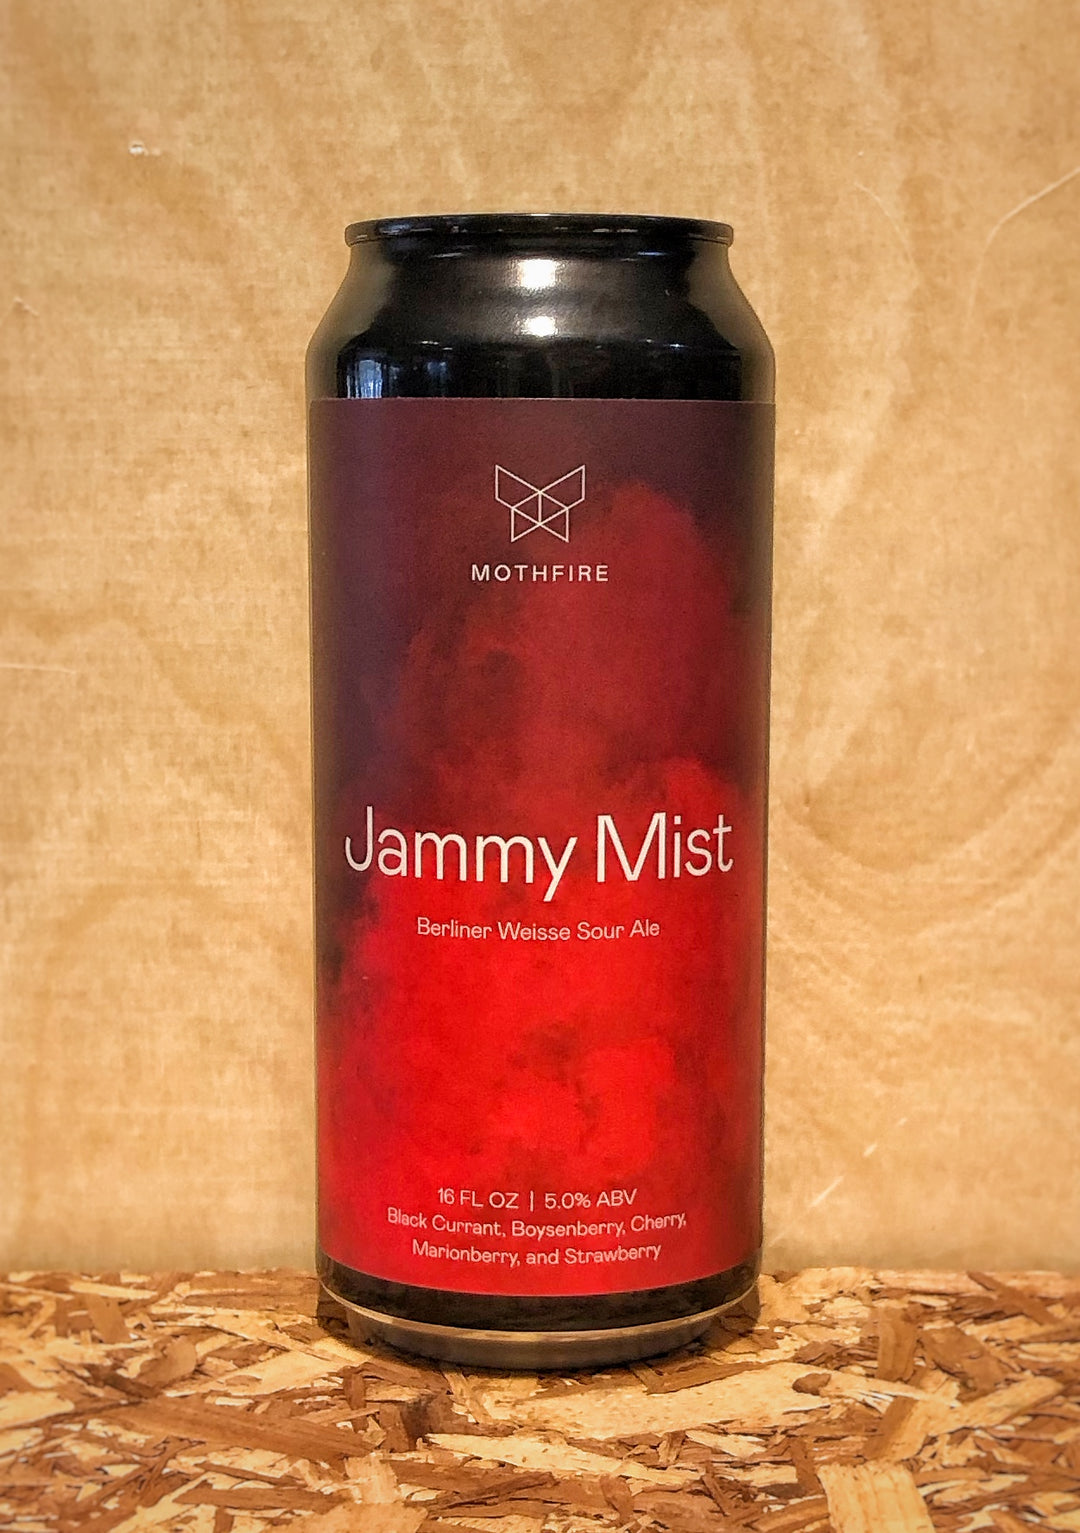 Mothfire Brewing 'Jammy Mist' Berliner Weisse Sour Ale with Dark Cherry, Blackberry, Marionberry, & Strawberry (Ann Arbor, MI)